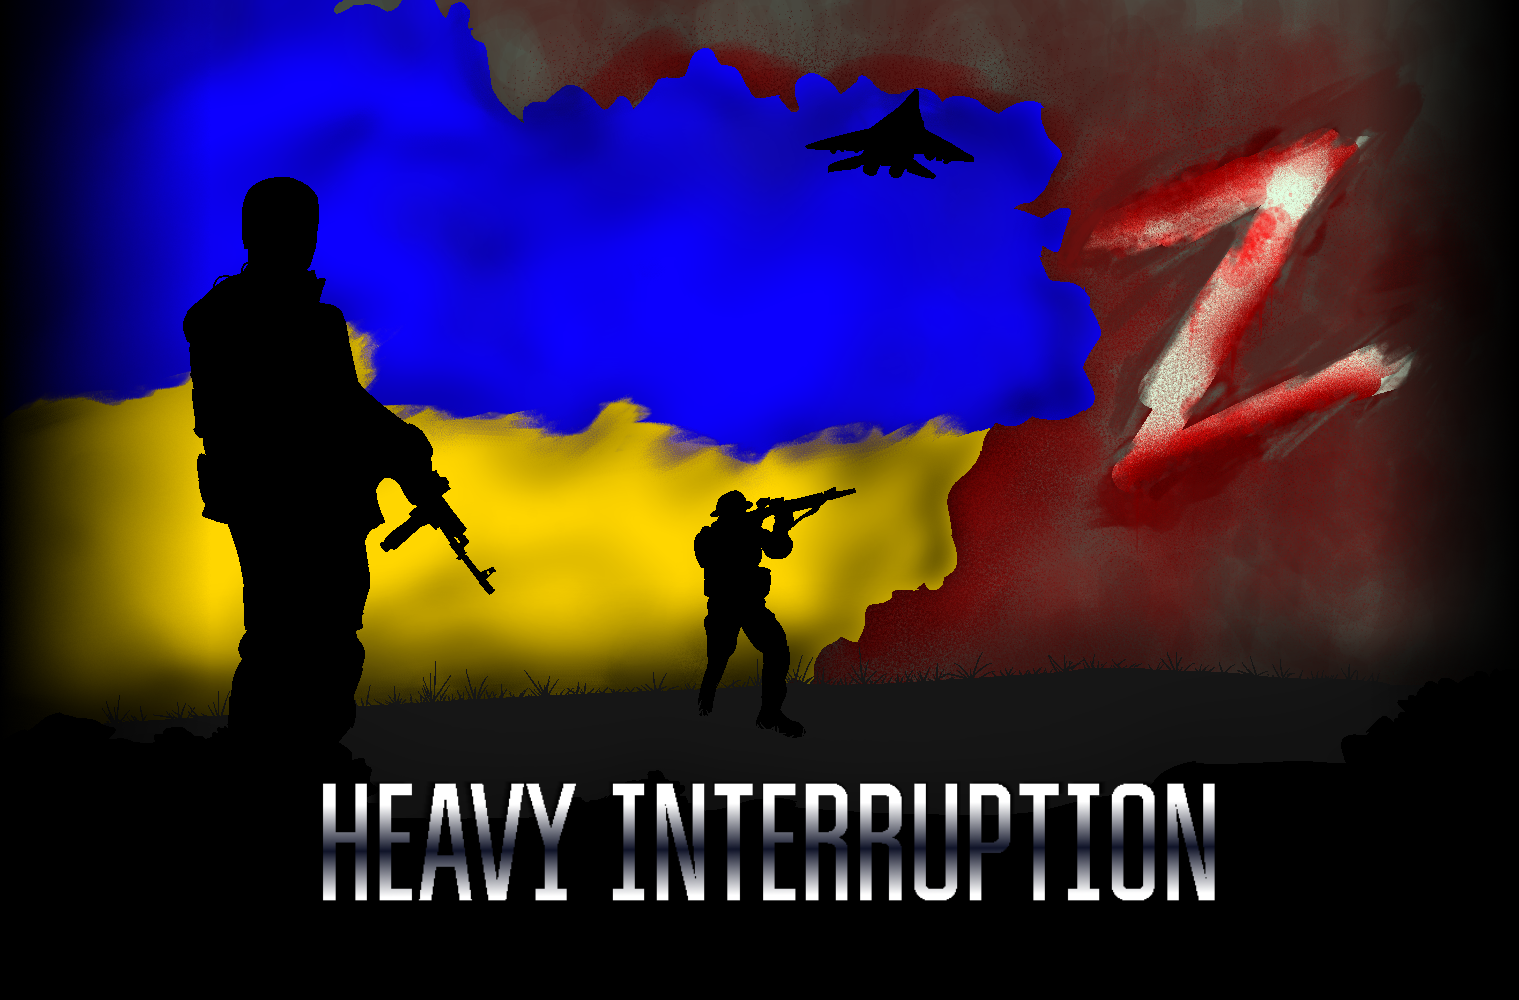 Heavy Interruption